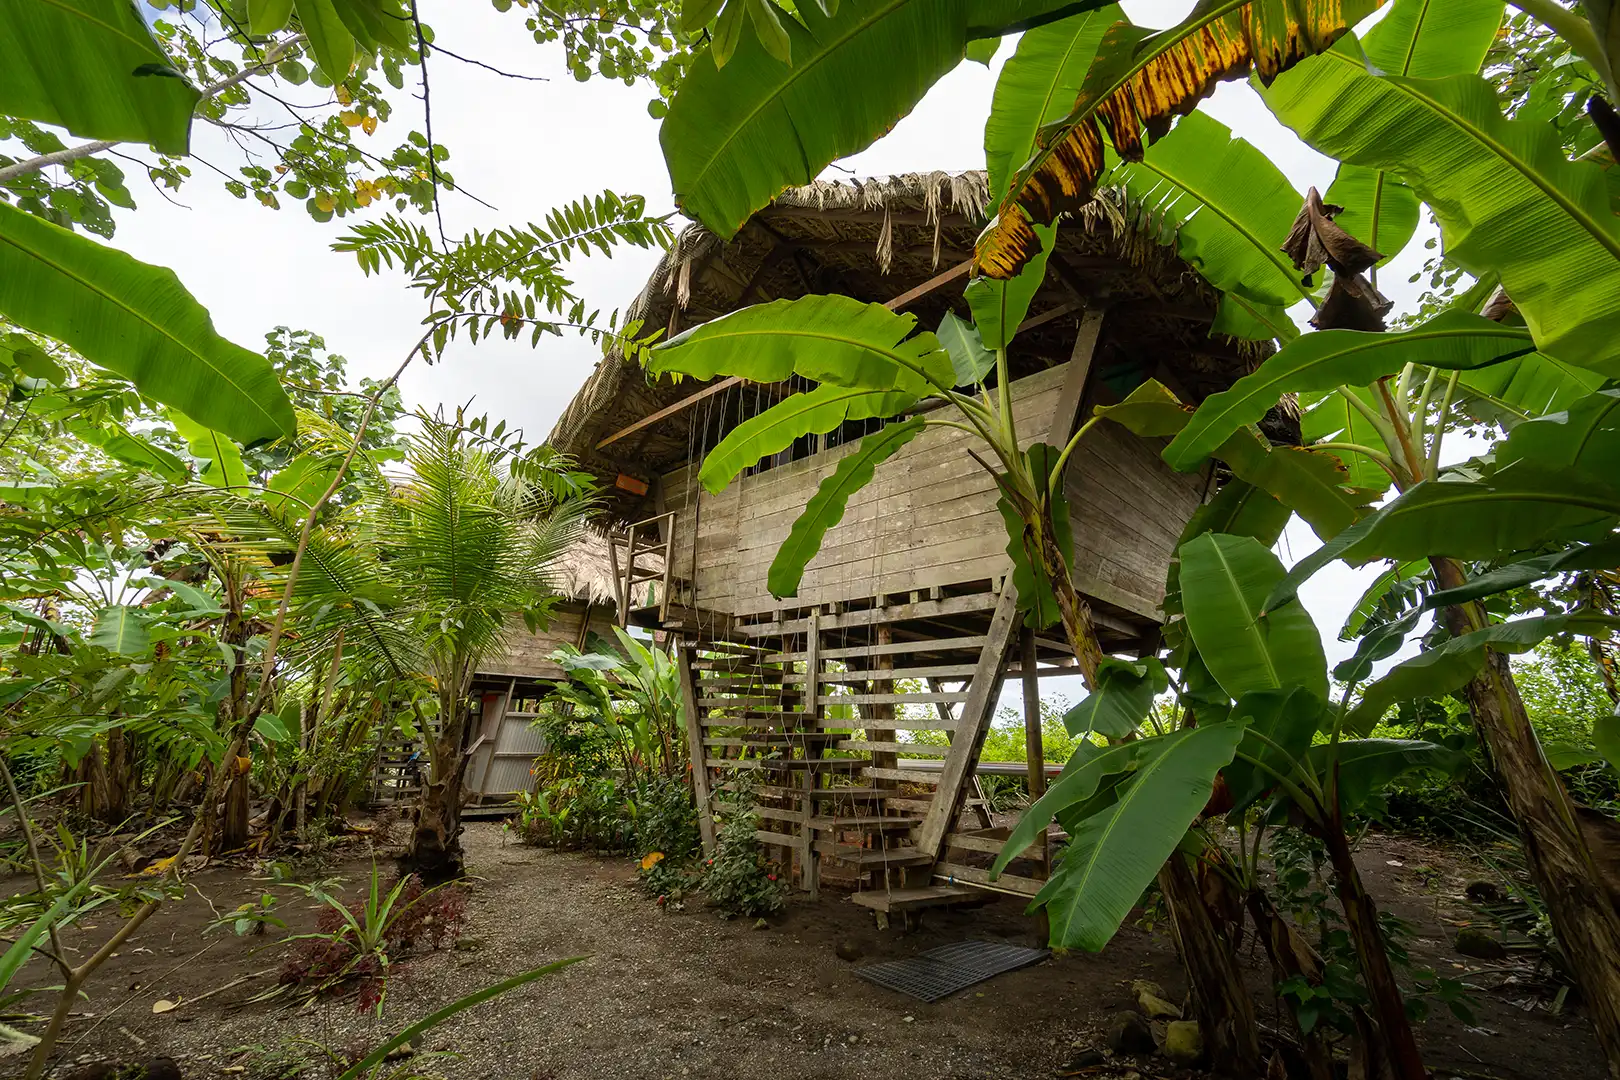 Cabaña en pacifico colombiano de madera rodeada de vegetación